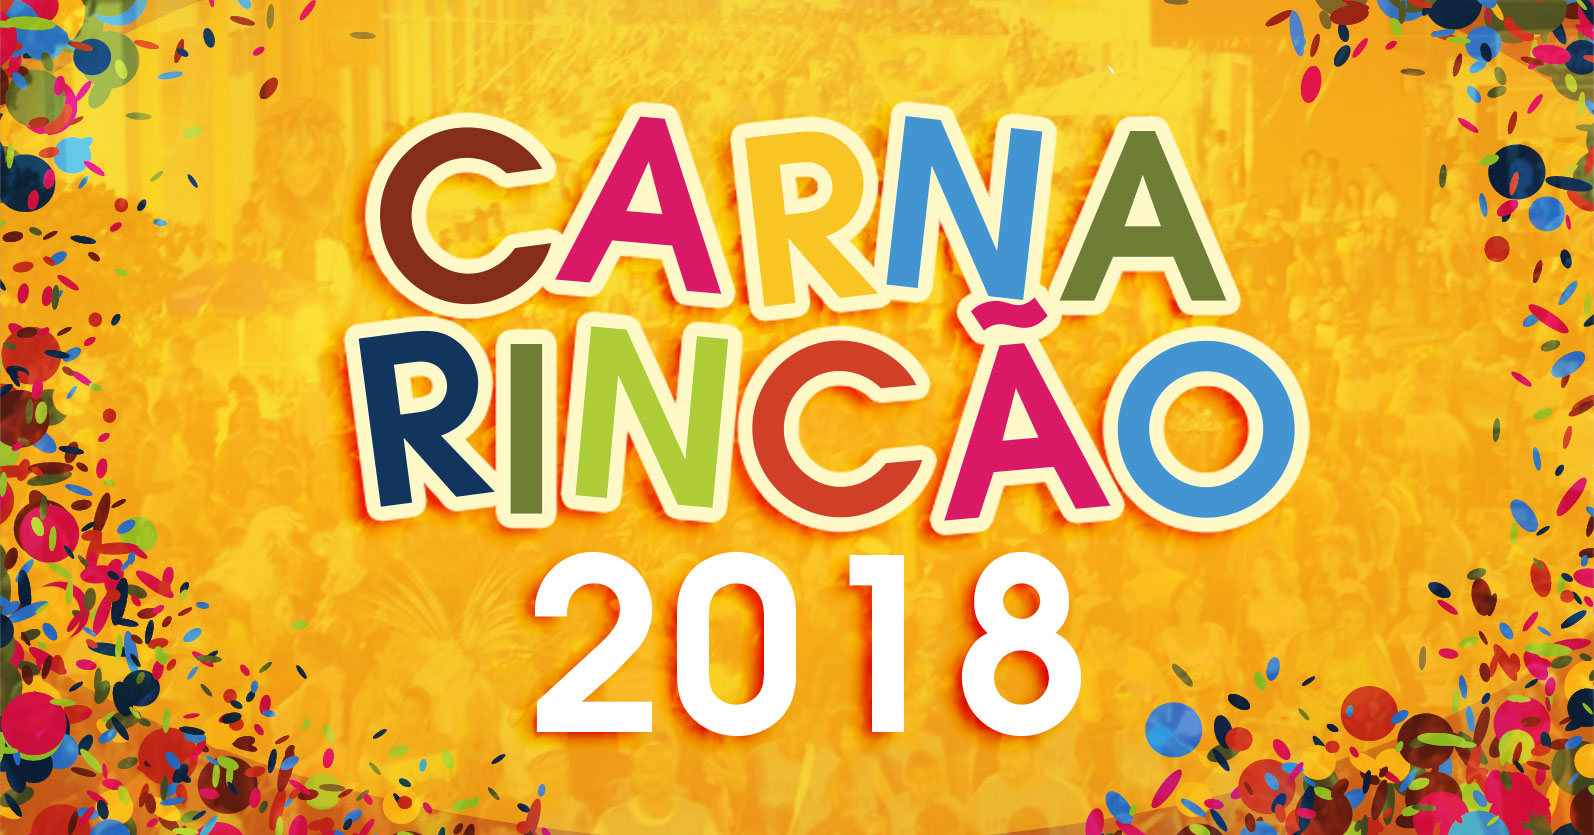 Confira a programação completa do CarnaRincão 2018